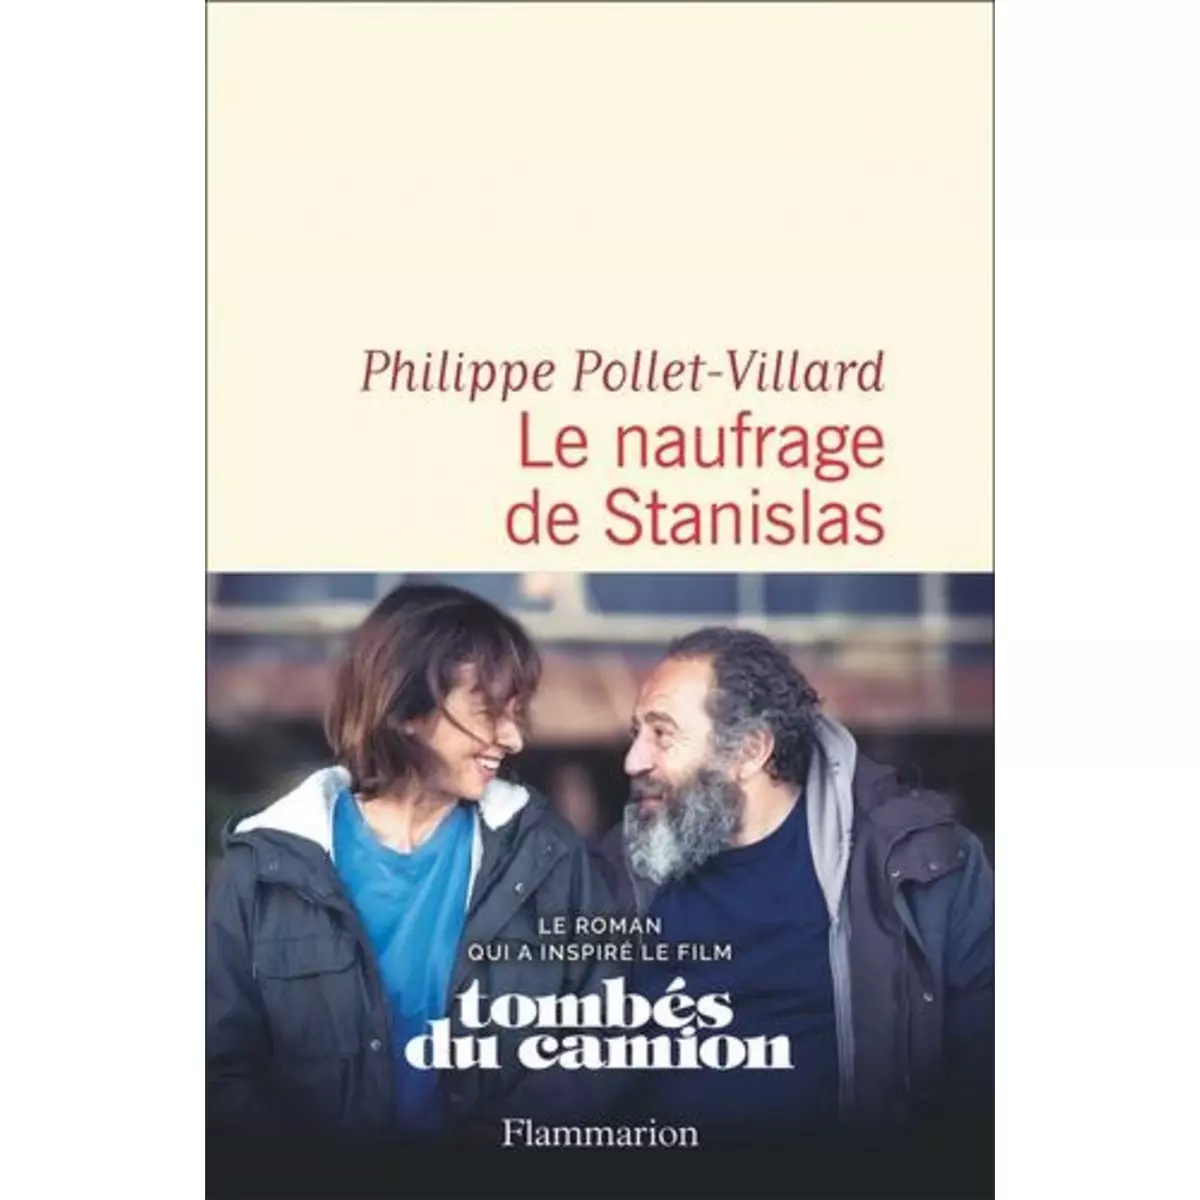  LE NAUFRAGE DE STANISLAS, Pollet-Villard Philippe